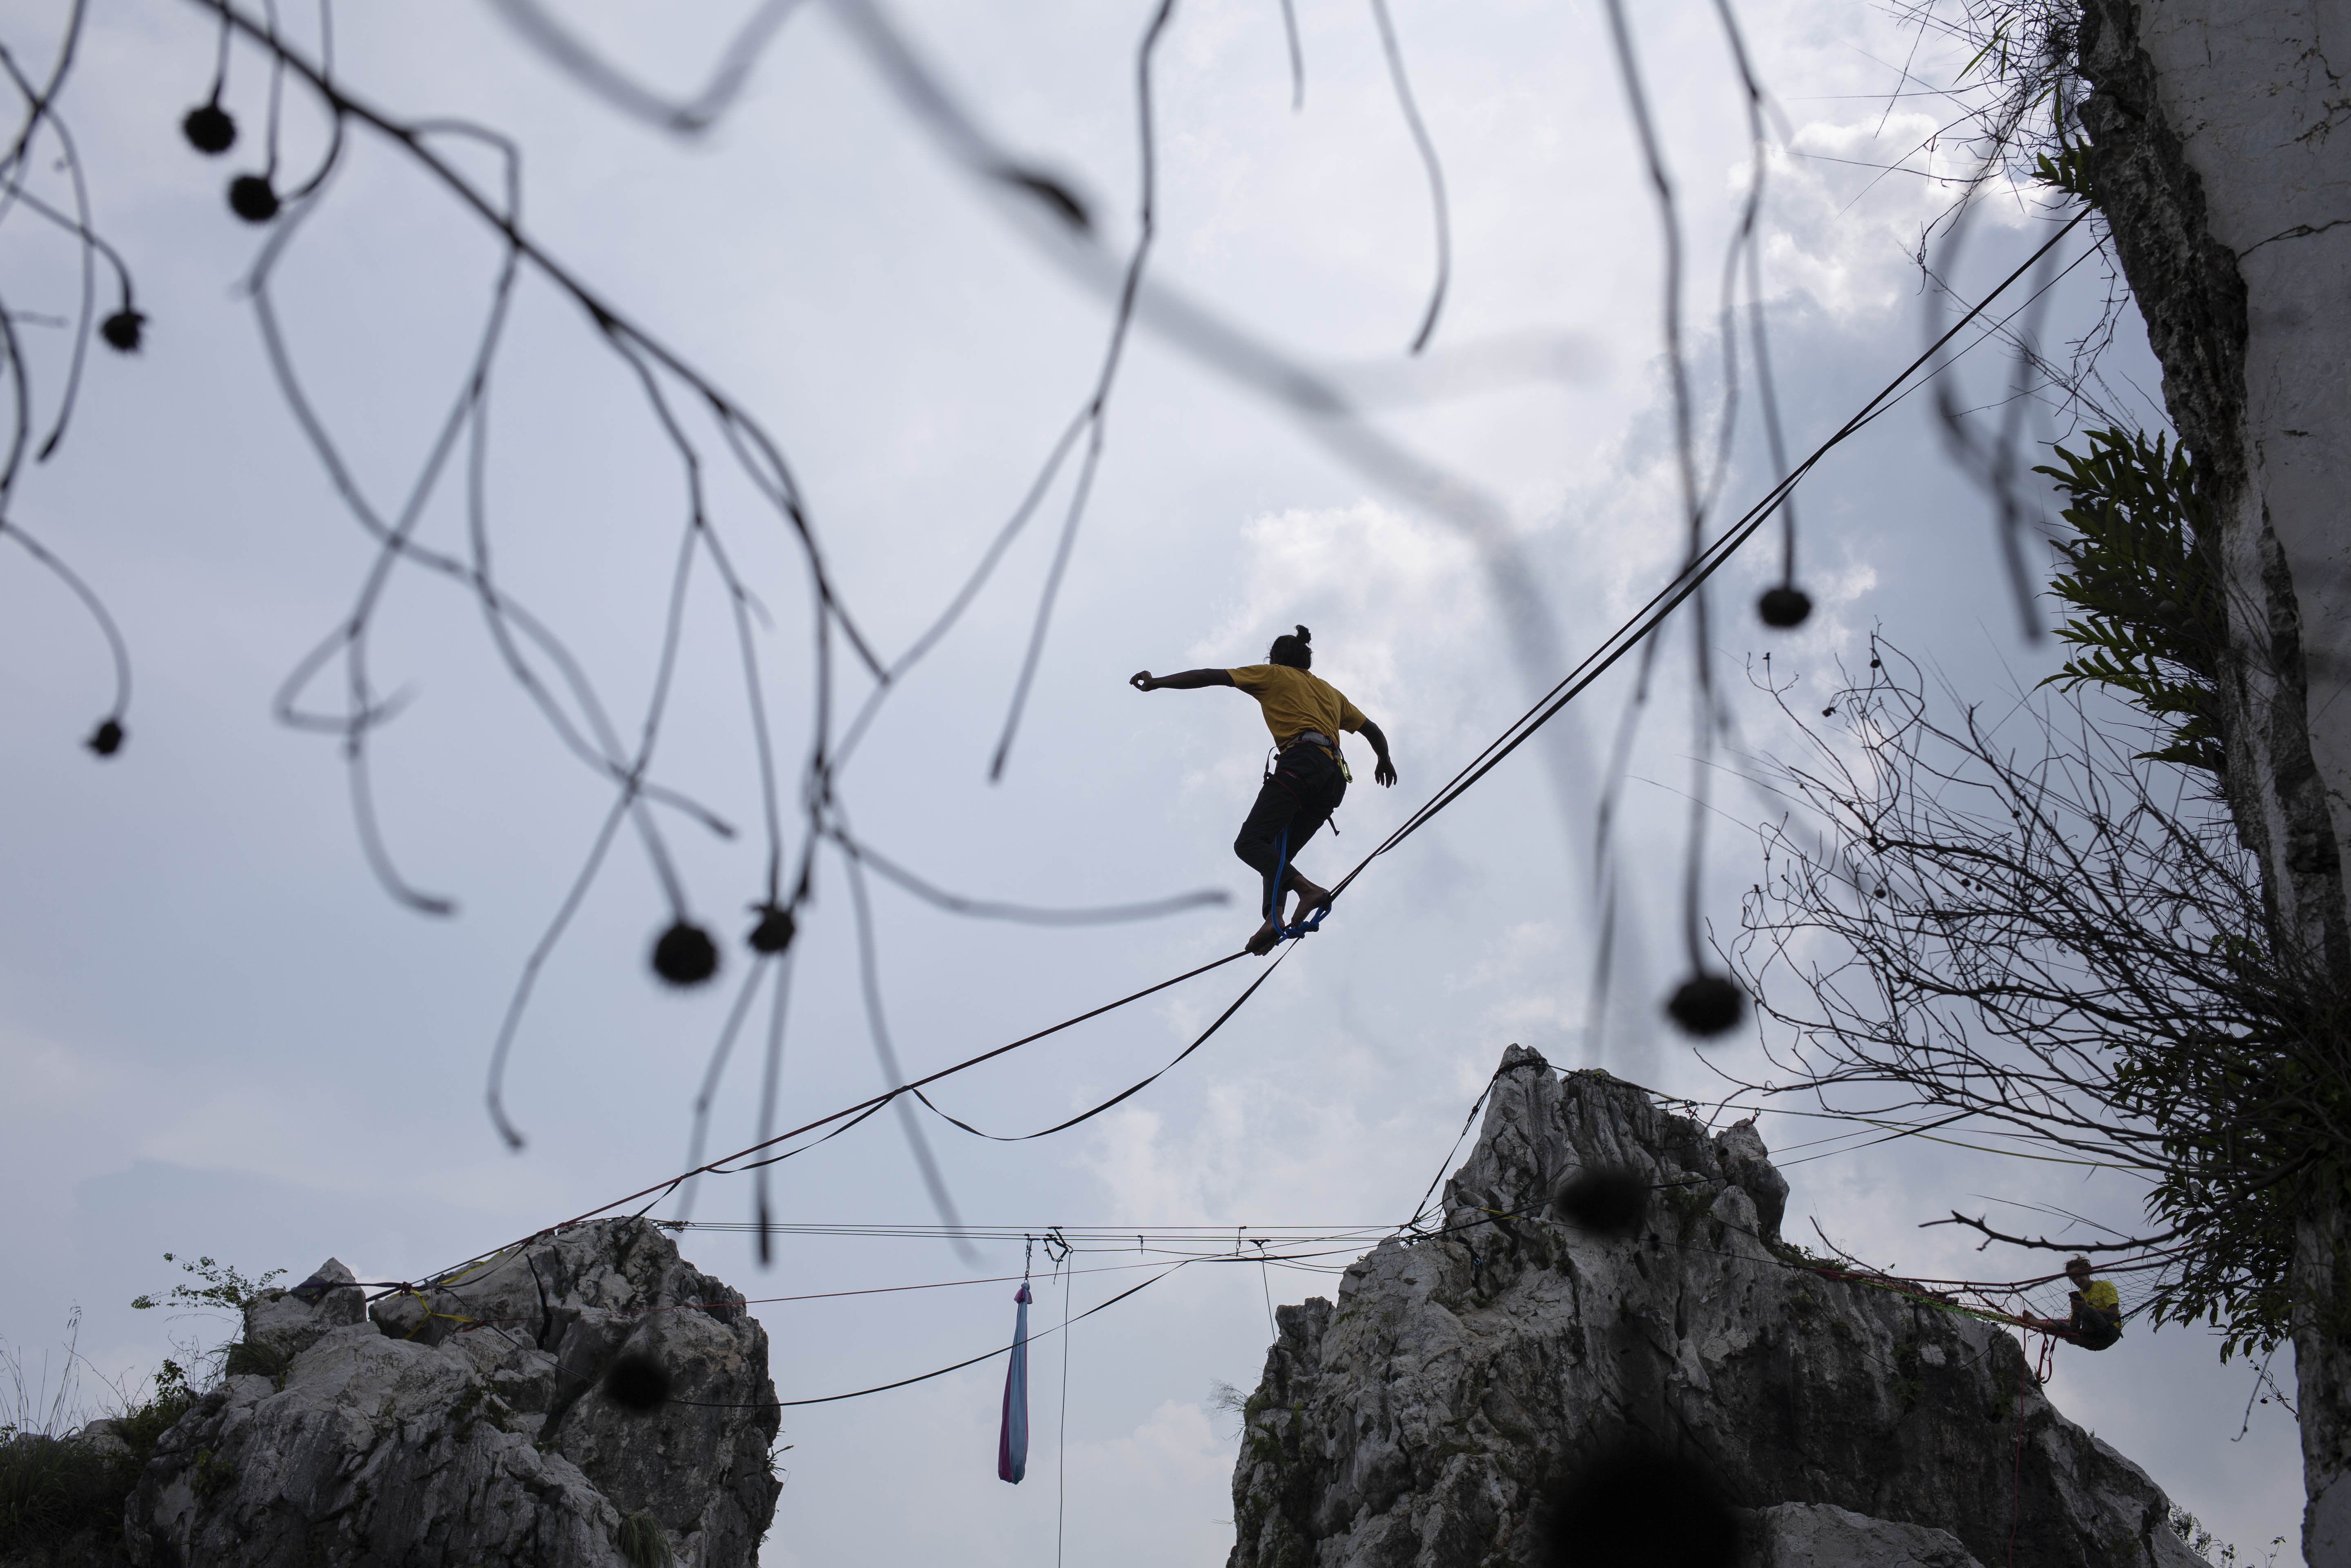 Dadeng, menjaga keseimbangan di atas tali saat melakukan aksi highline di Tebing Gunung Hawu, Padalarang, Kabupaten Bandung Barat.